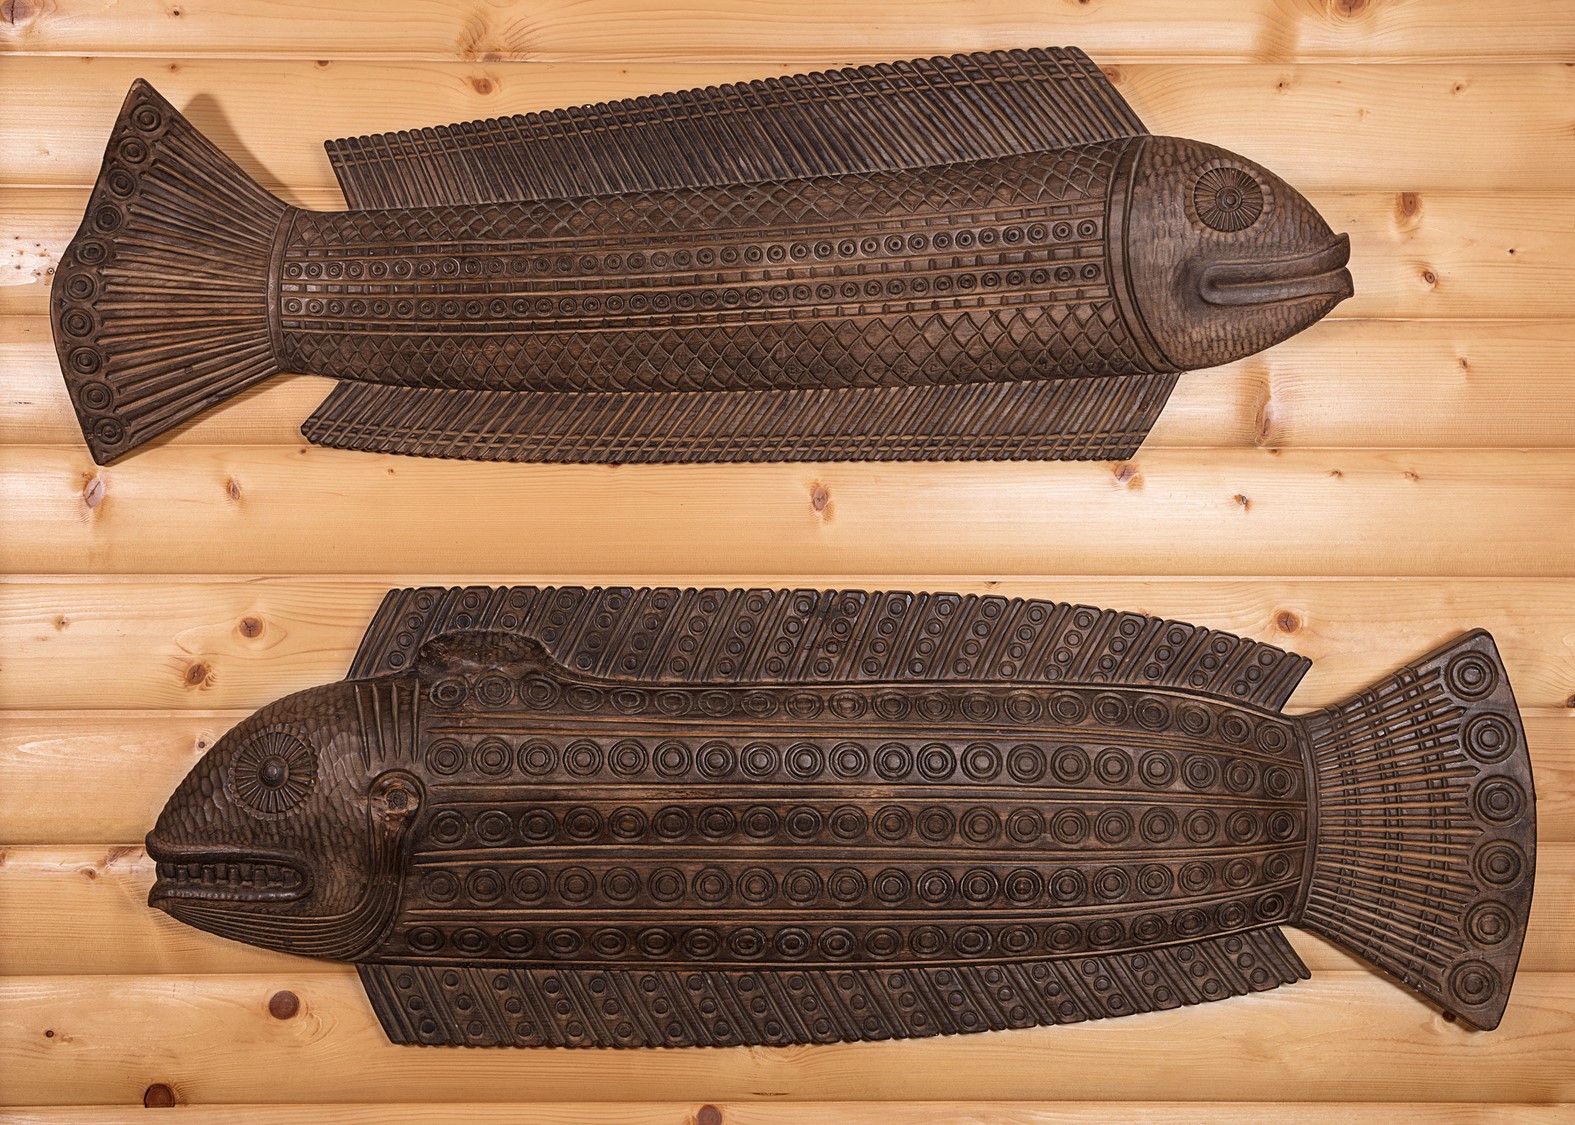 Rzeźby w drewnie reprezentujące duże ryby